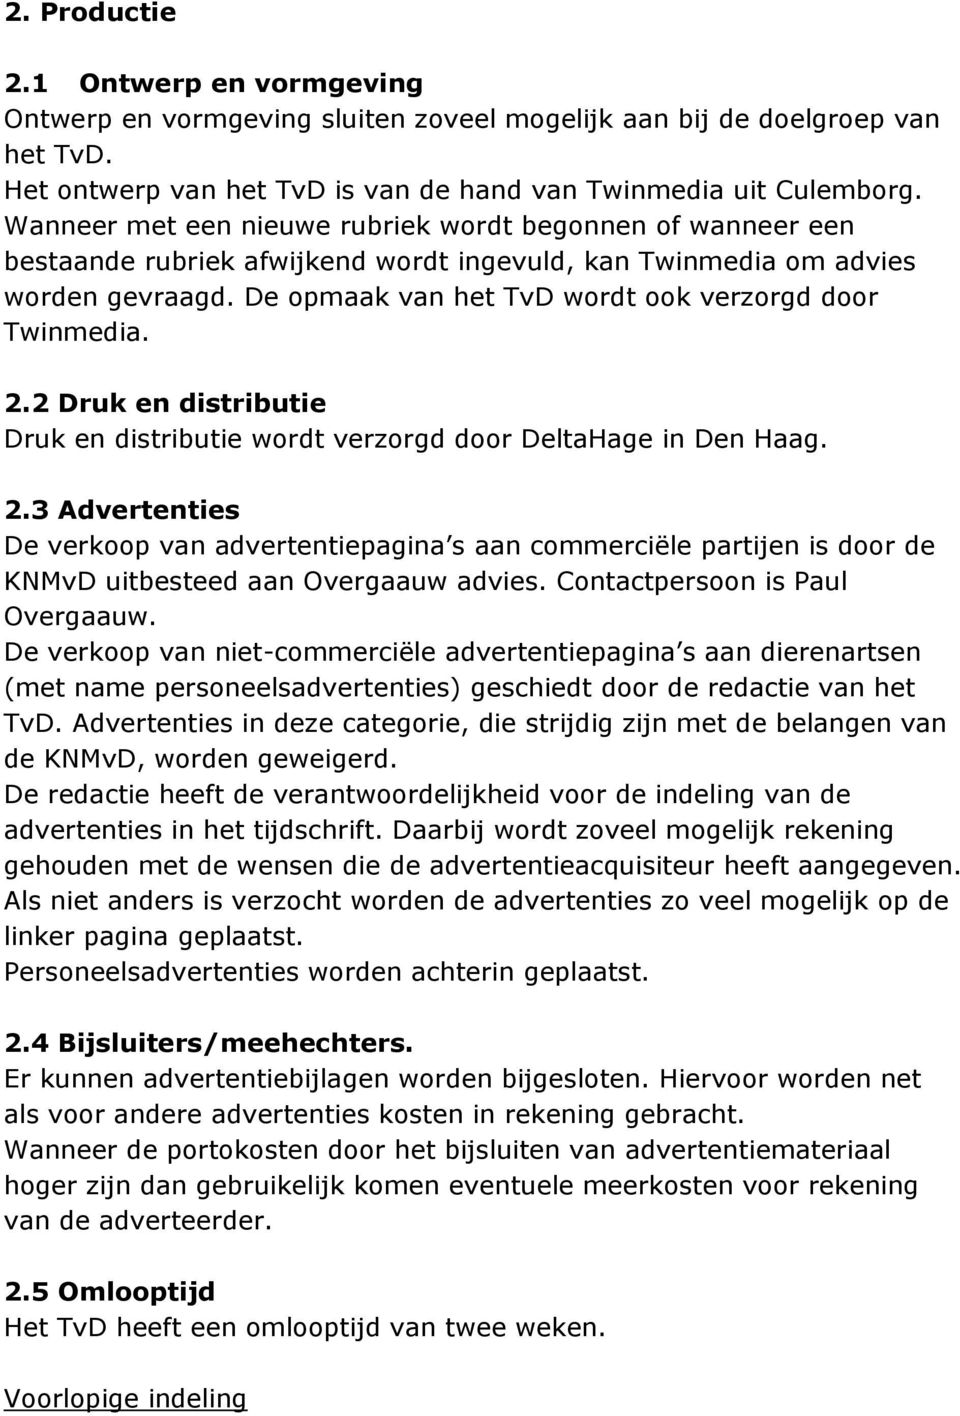 De opmaak van het TvD wordt ook verzorgd door Twinmedia. 2.2 Druk en distributie Druk en distributie wordt verzorgd door DeltaHage in Den Haag. 2.3 Advertenties De verkoop van advertentiepagina s aan commerciële partijen is door de KNMvD uitbesteed aan Overgaauw advies.